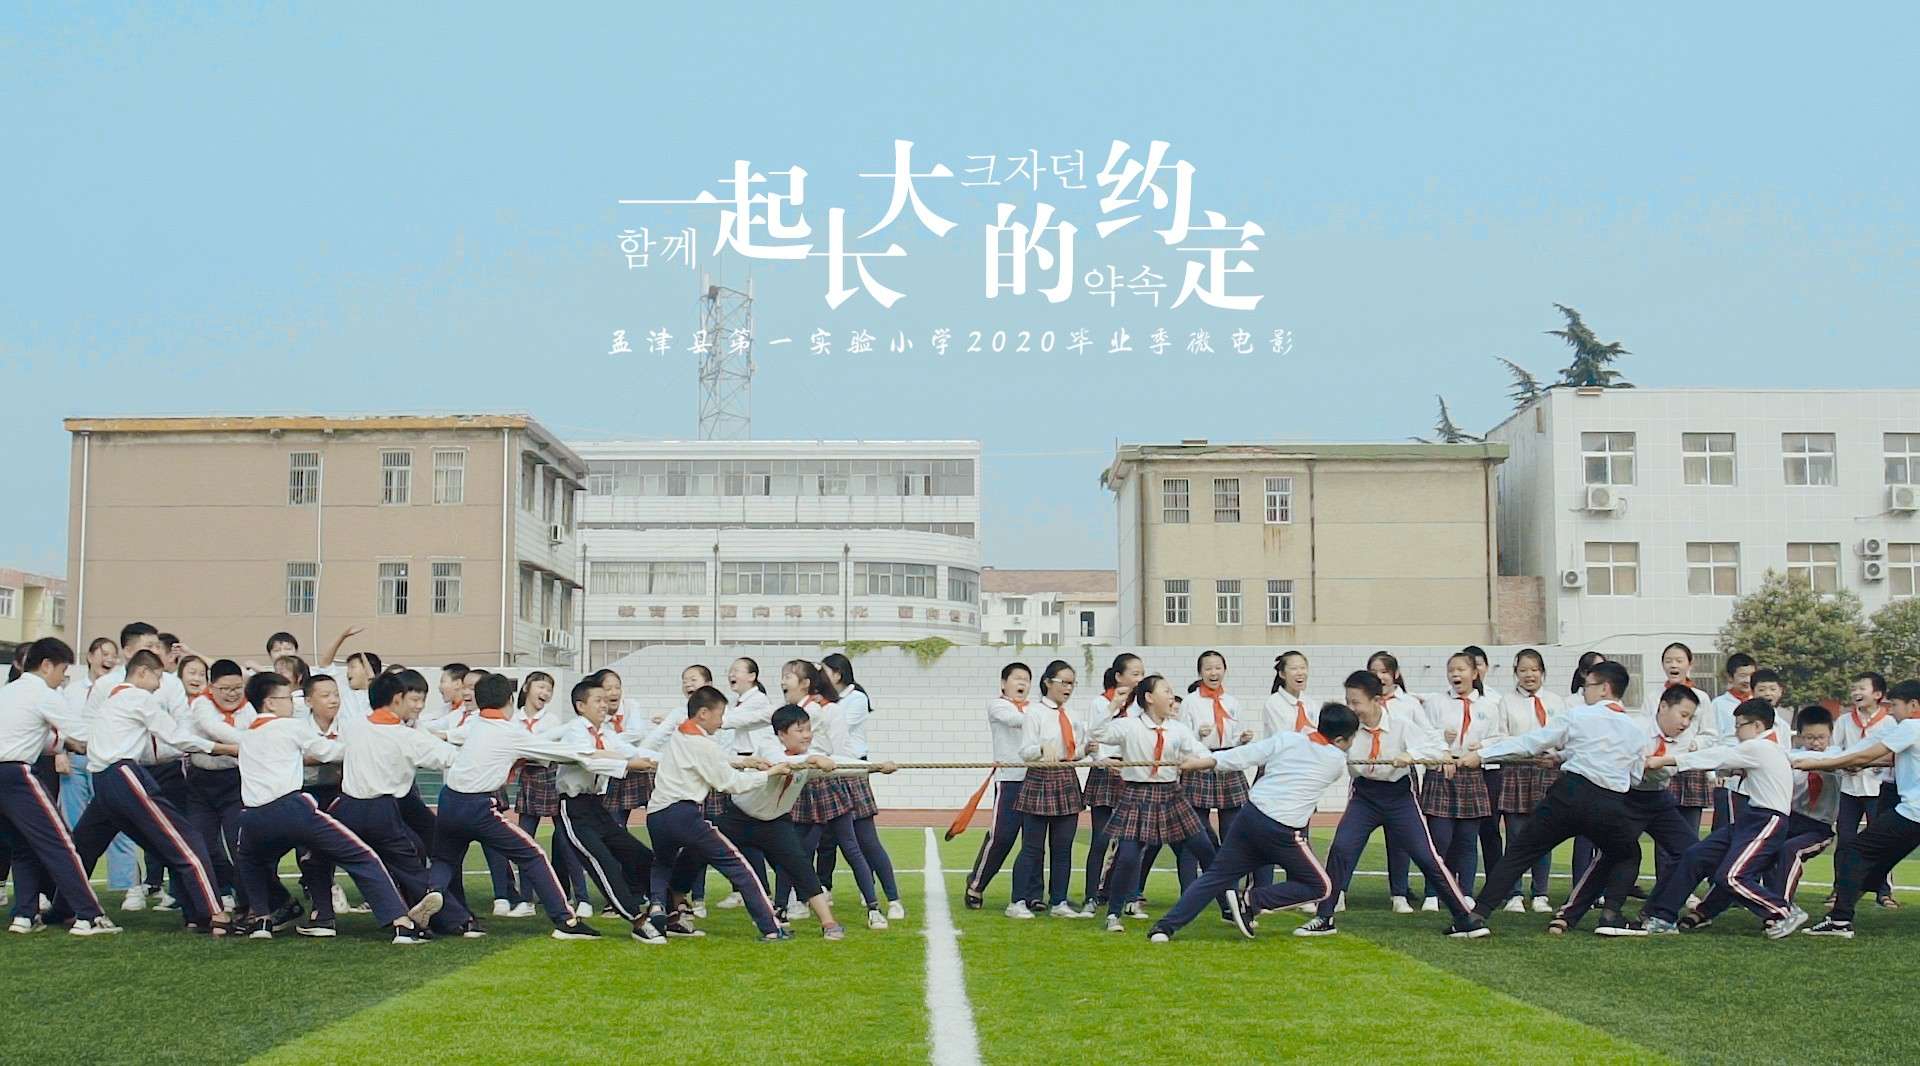 『孟津县第一实验小学2020毕业季微电影』